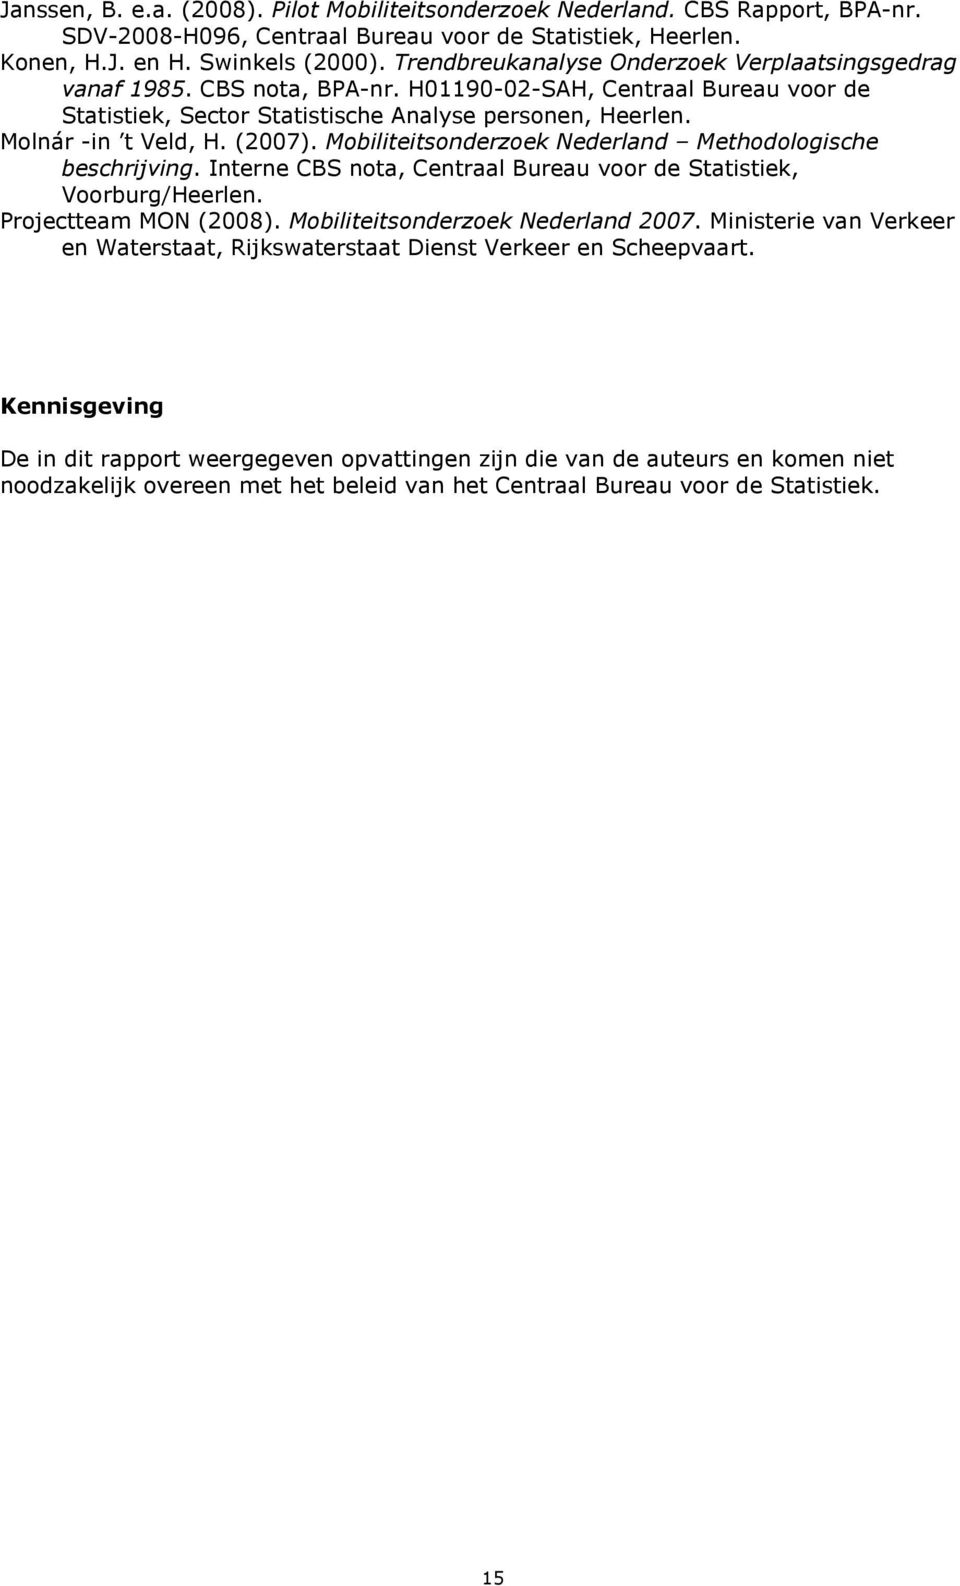 Mobilieisonderzoek Nederland Mehodologische beschrijving. Inerne CBS noa, Cenraal Bureau voor de Saisiek, Voorburg/Heerlen. Projeceam MON (2008). Mobilieisonderzoek Nederland 2007.